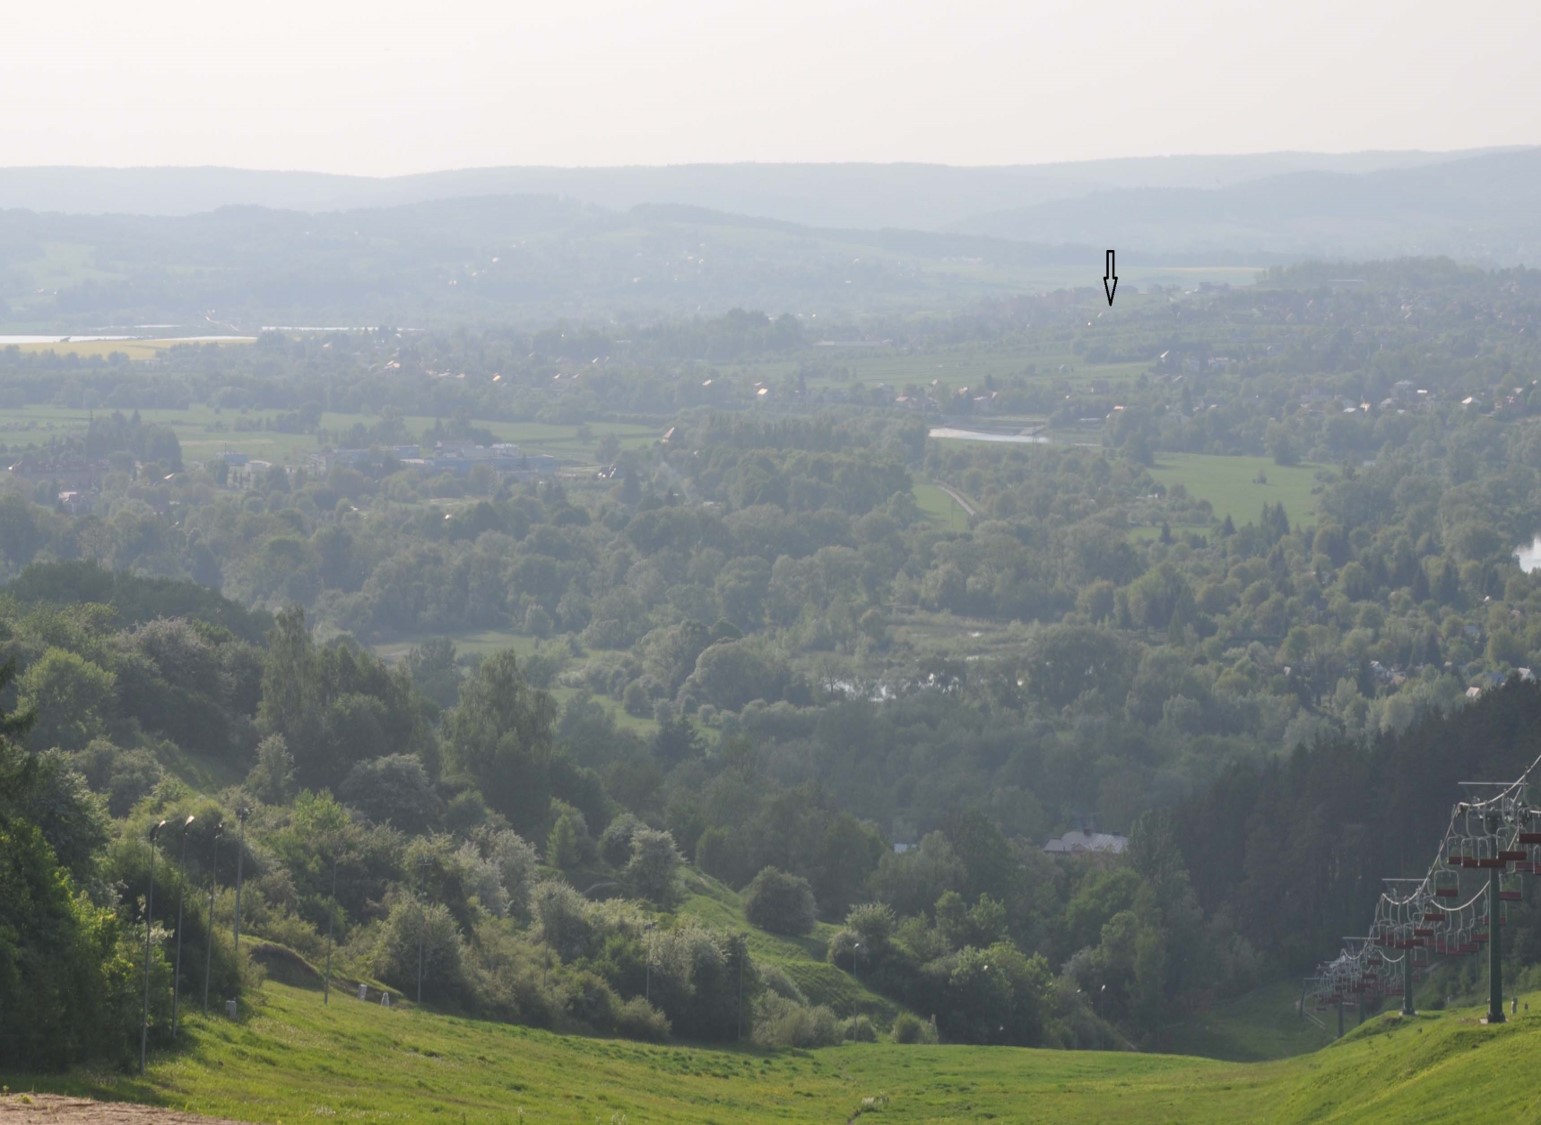 Ryc. 1. Widok na dolinę Sanu i cmentarzysko w Ostrowie (fot. Sabina Stempniak)